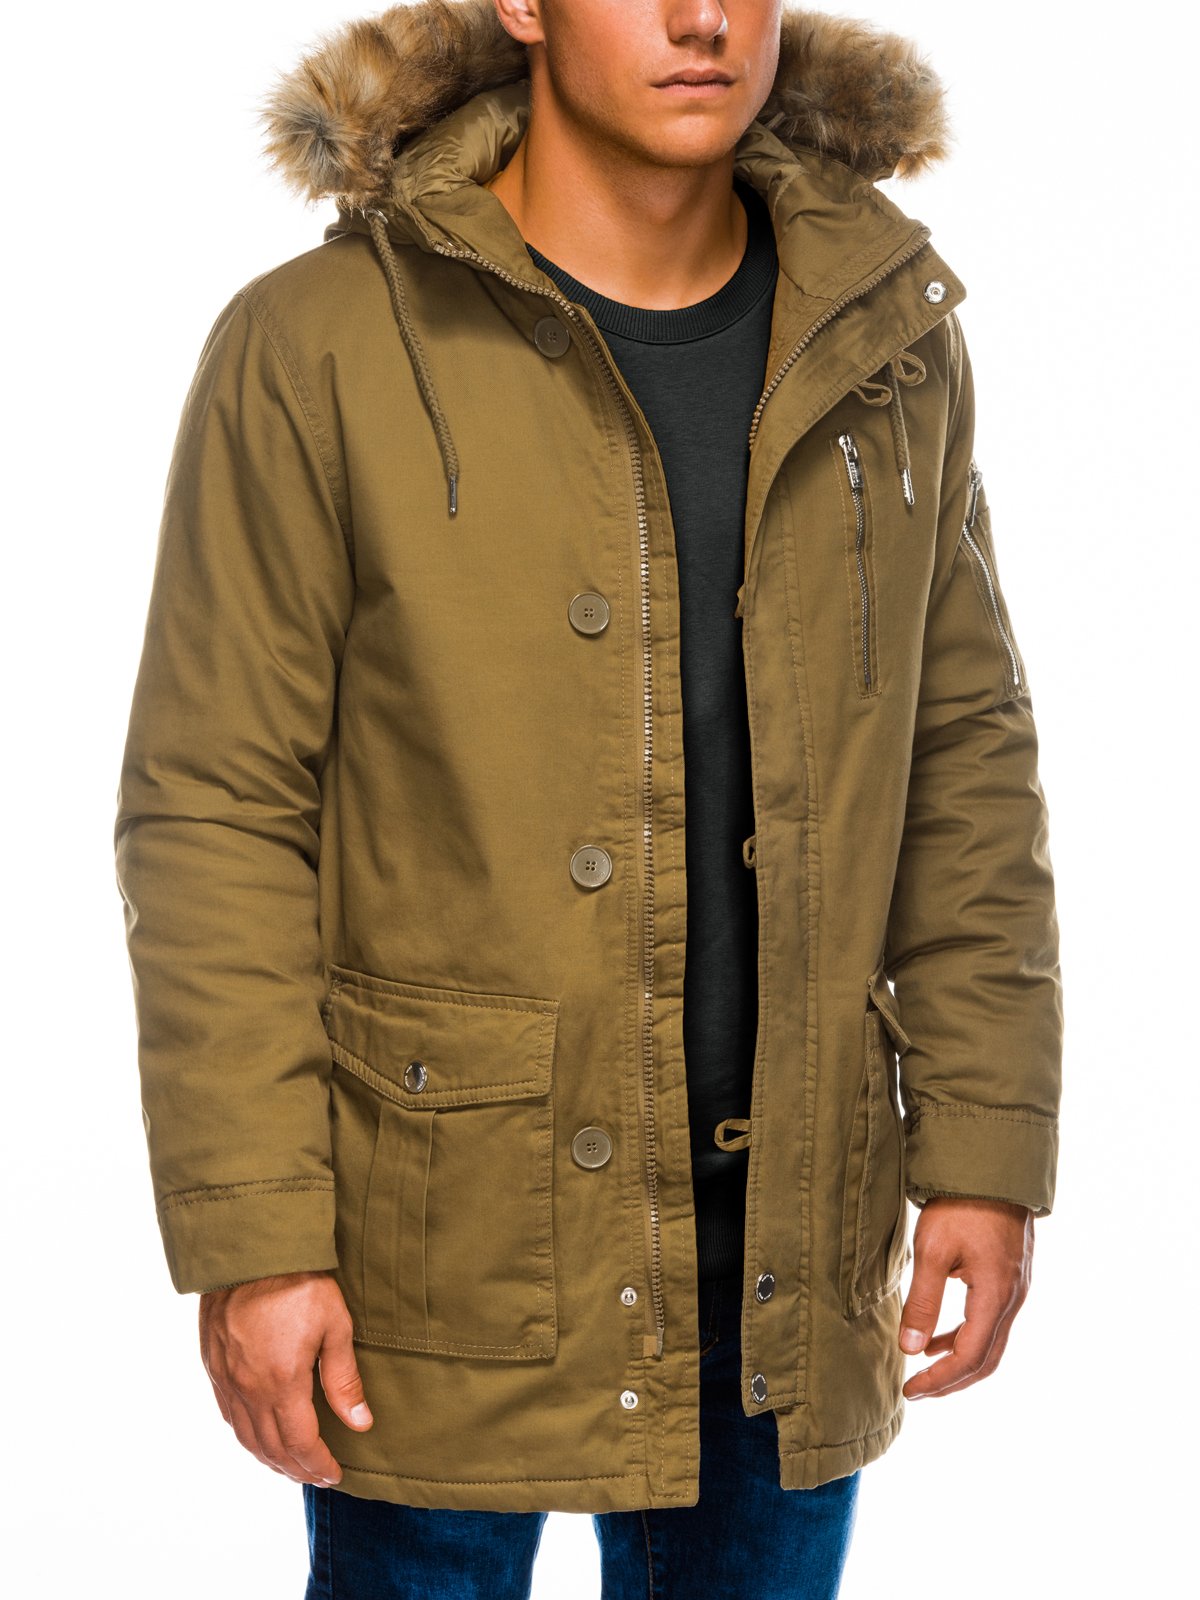 Men's winter parka jacket C365 - olive | MODONE wholesale - Clothing ...